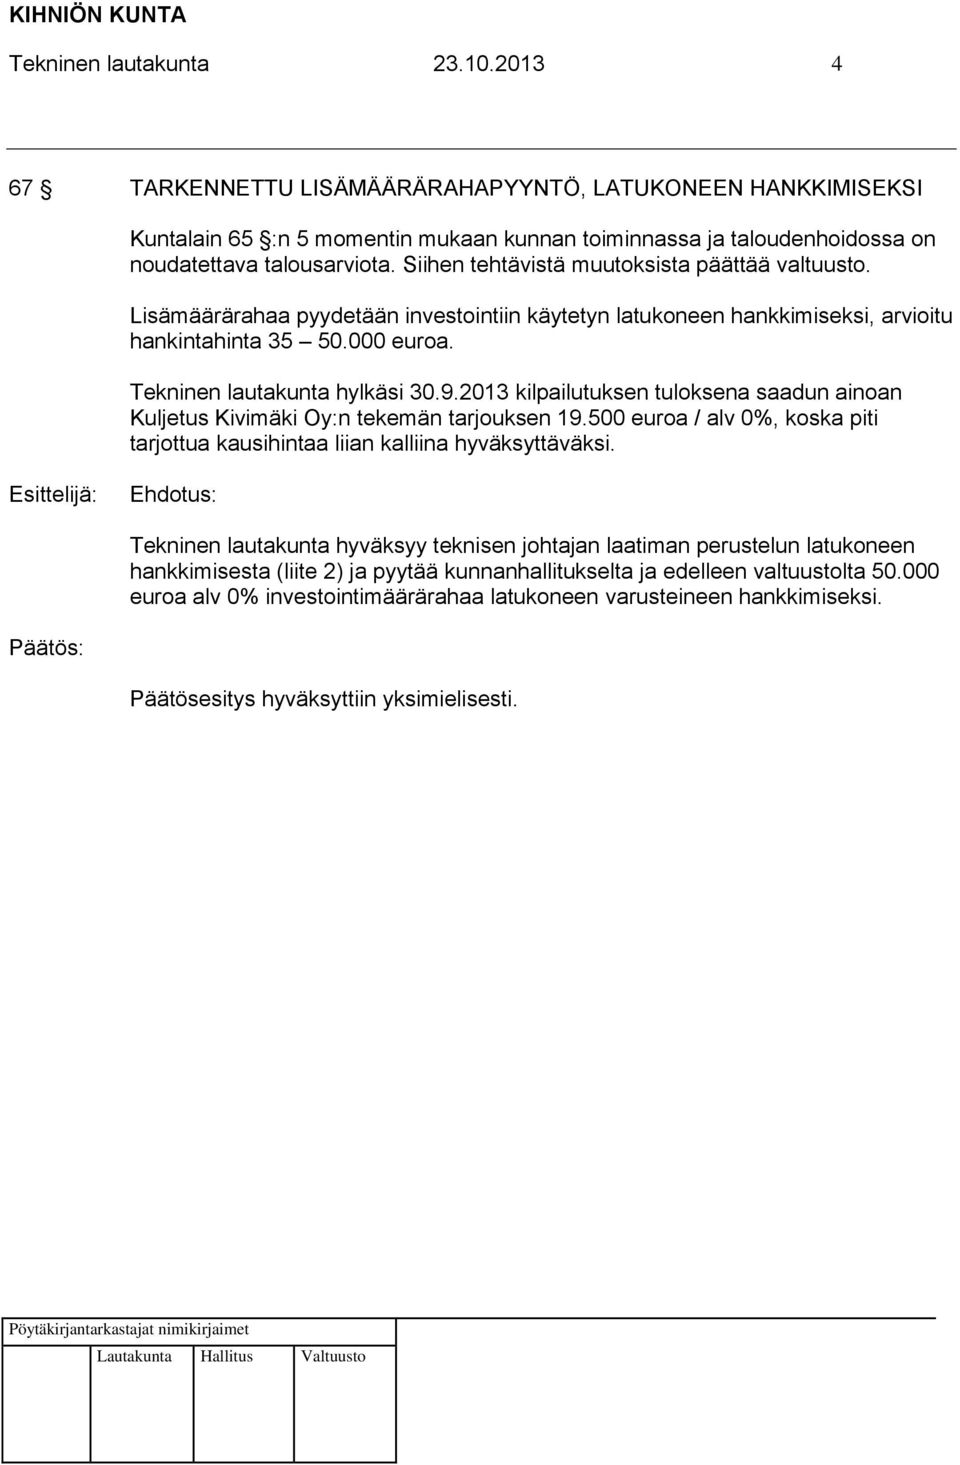 2013 kilpailutuksen tuloksena saadun ainoan Kuljetus Kivimäki Oy:n tekemän tarjouksen 19.500 euroa / alv 0%, koska piti tarjottua kausihintaa liian kalliina hyväksyttäväksi.